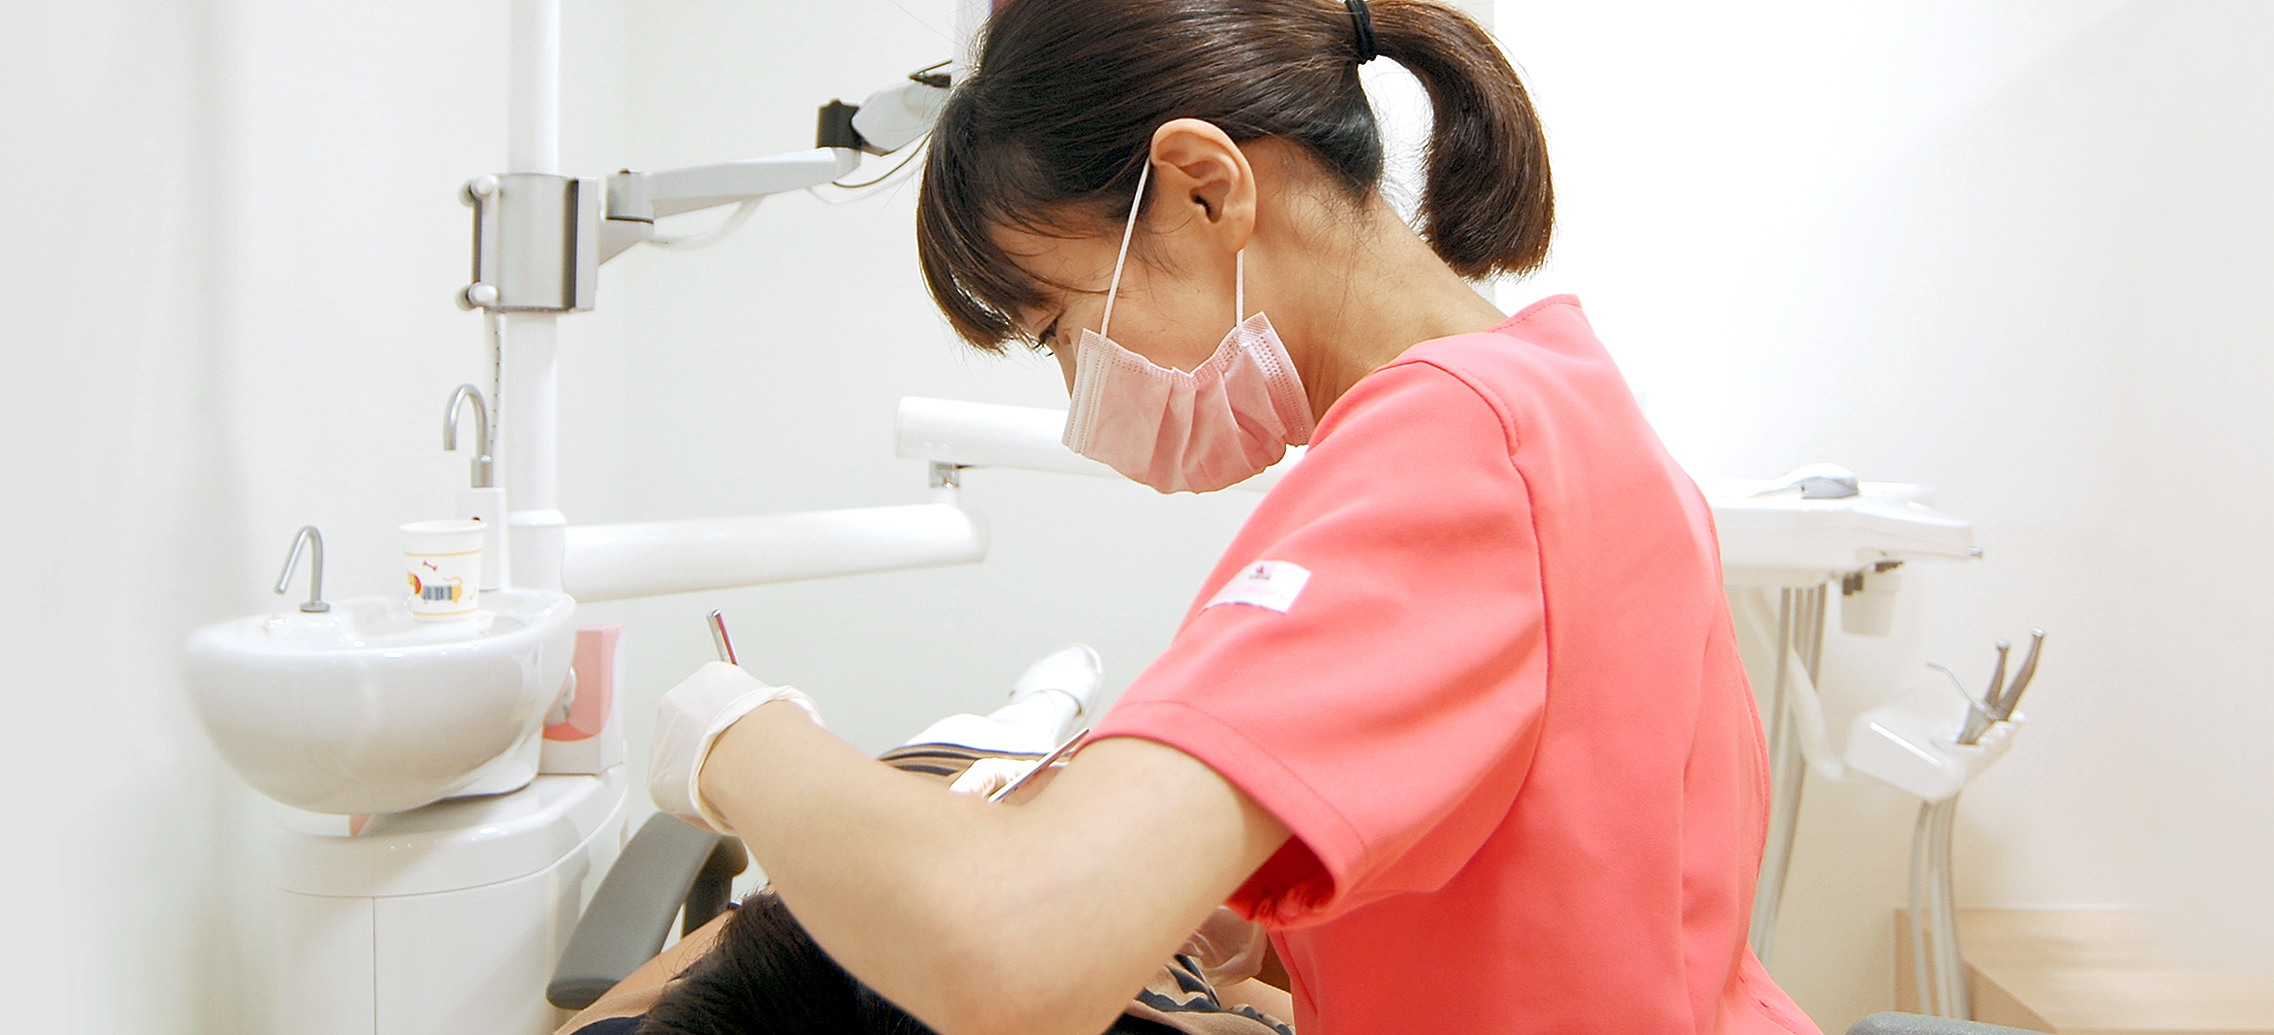 虫歯は「治す」前に「防ぐ」。定期的なメンテナンスで虫歯を未然に予防する。予防歯科